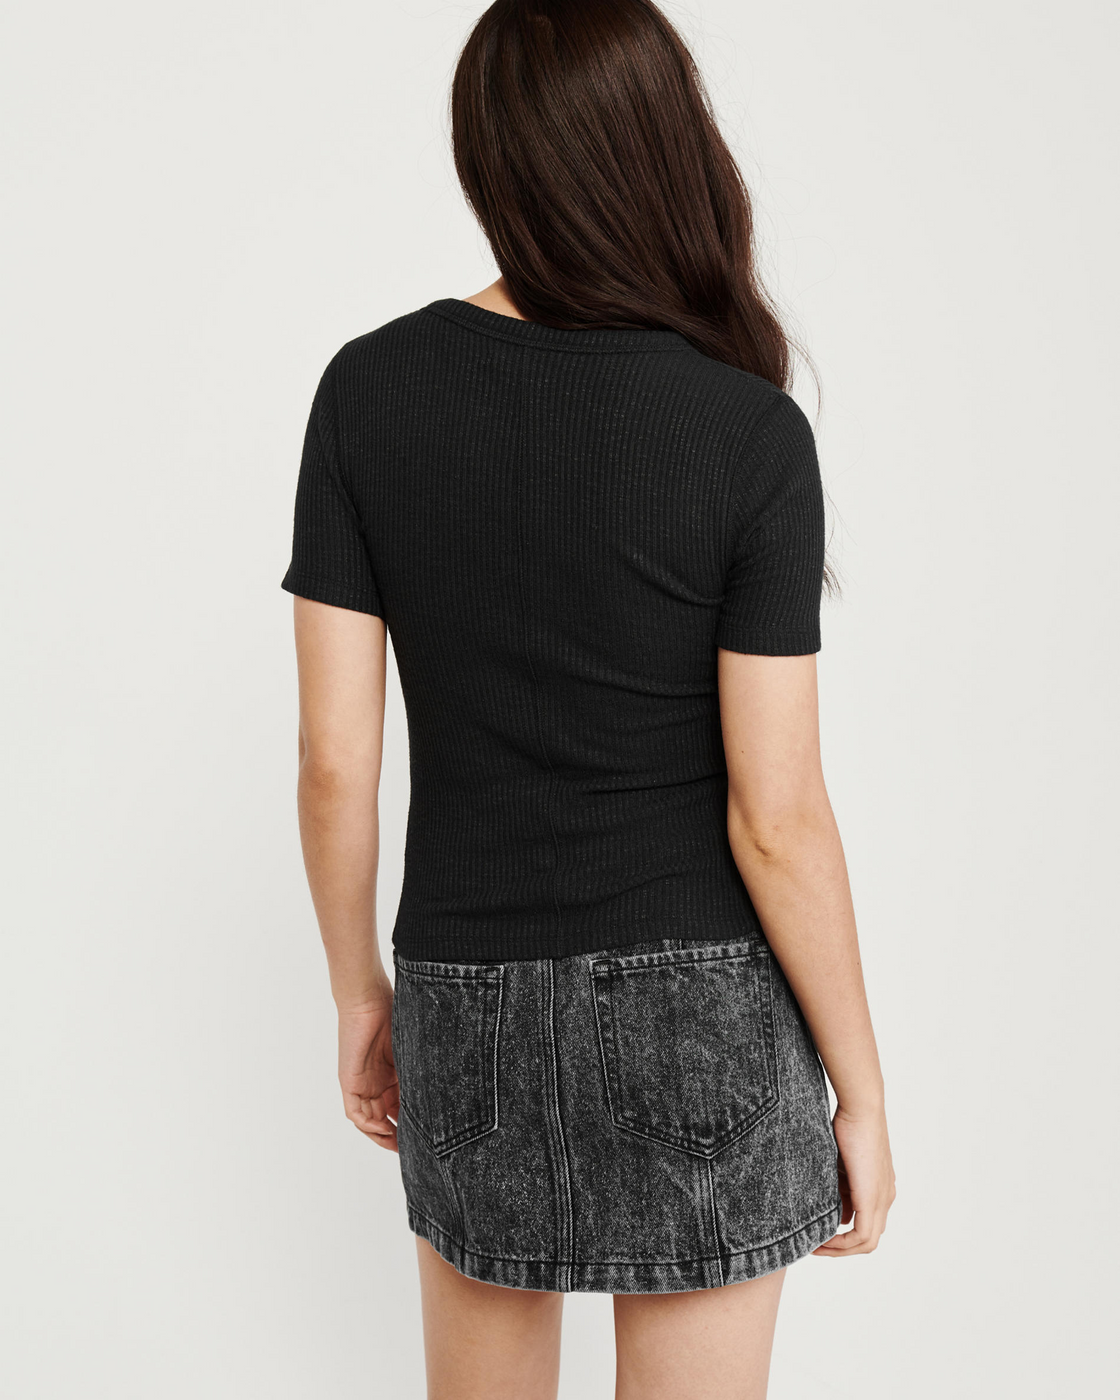 Черная футболка - женская футболка Abercrombie & Fitch, XS, XS